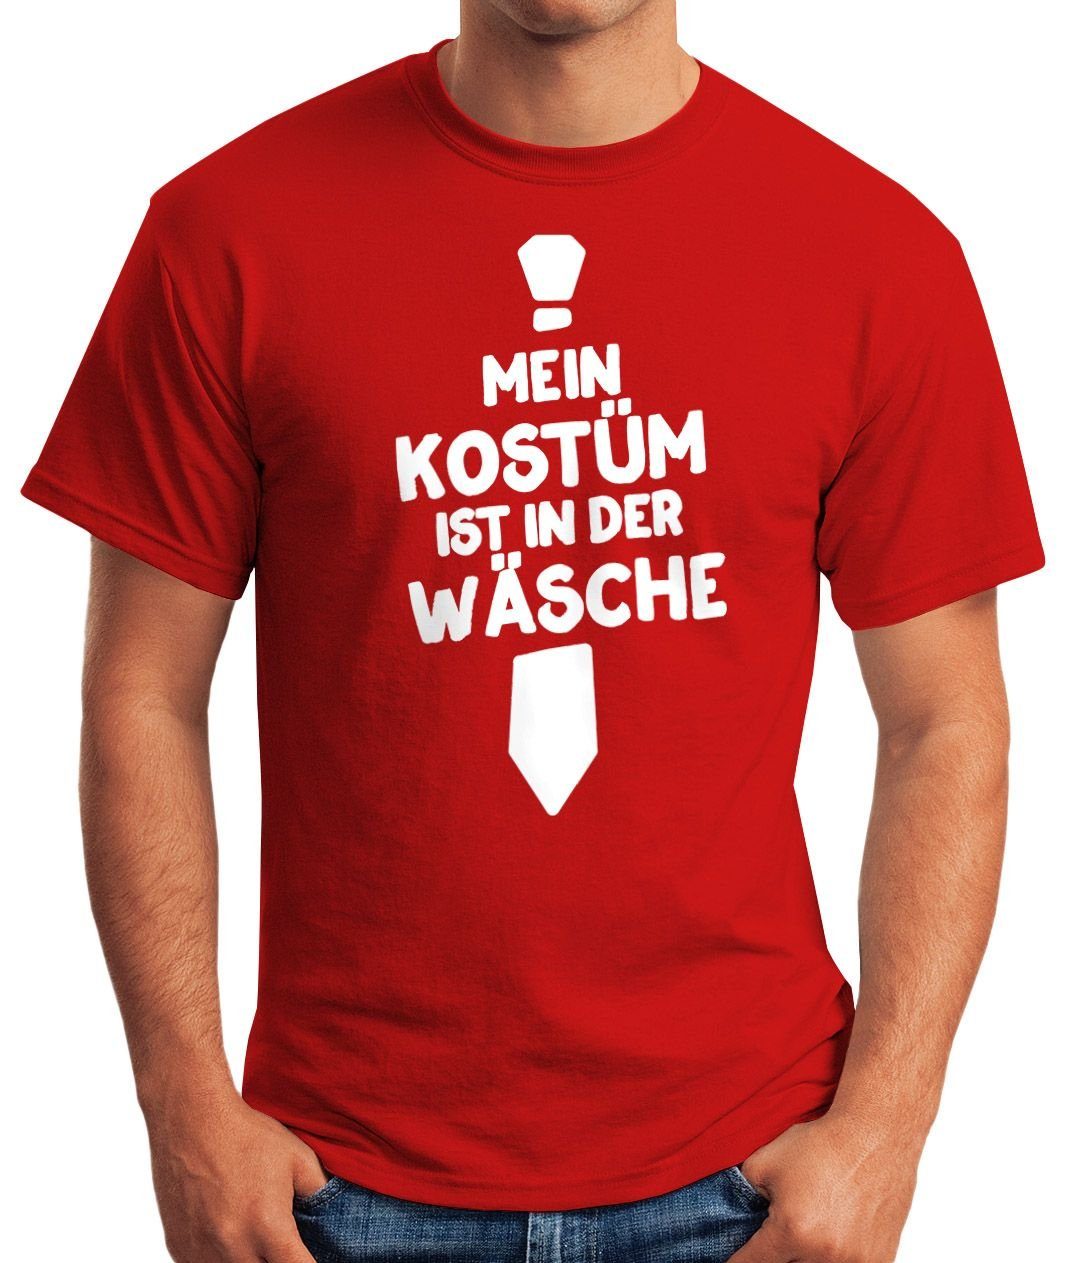 Wäsche Herren in Mein Moonworks® T-Shirt rot Print-Shirt MoonWorks der ist mit Fun-Shirt Print Faschings-Shirt Kostüm Fasching